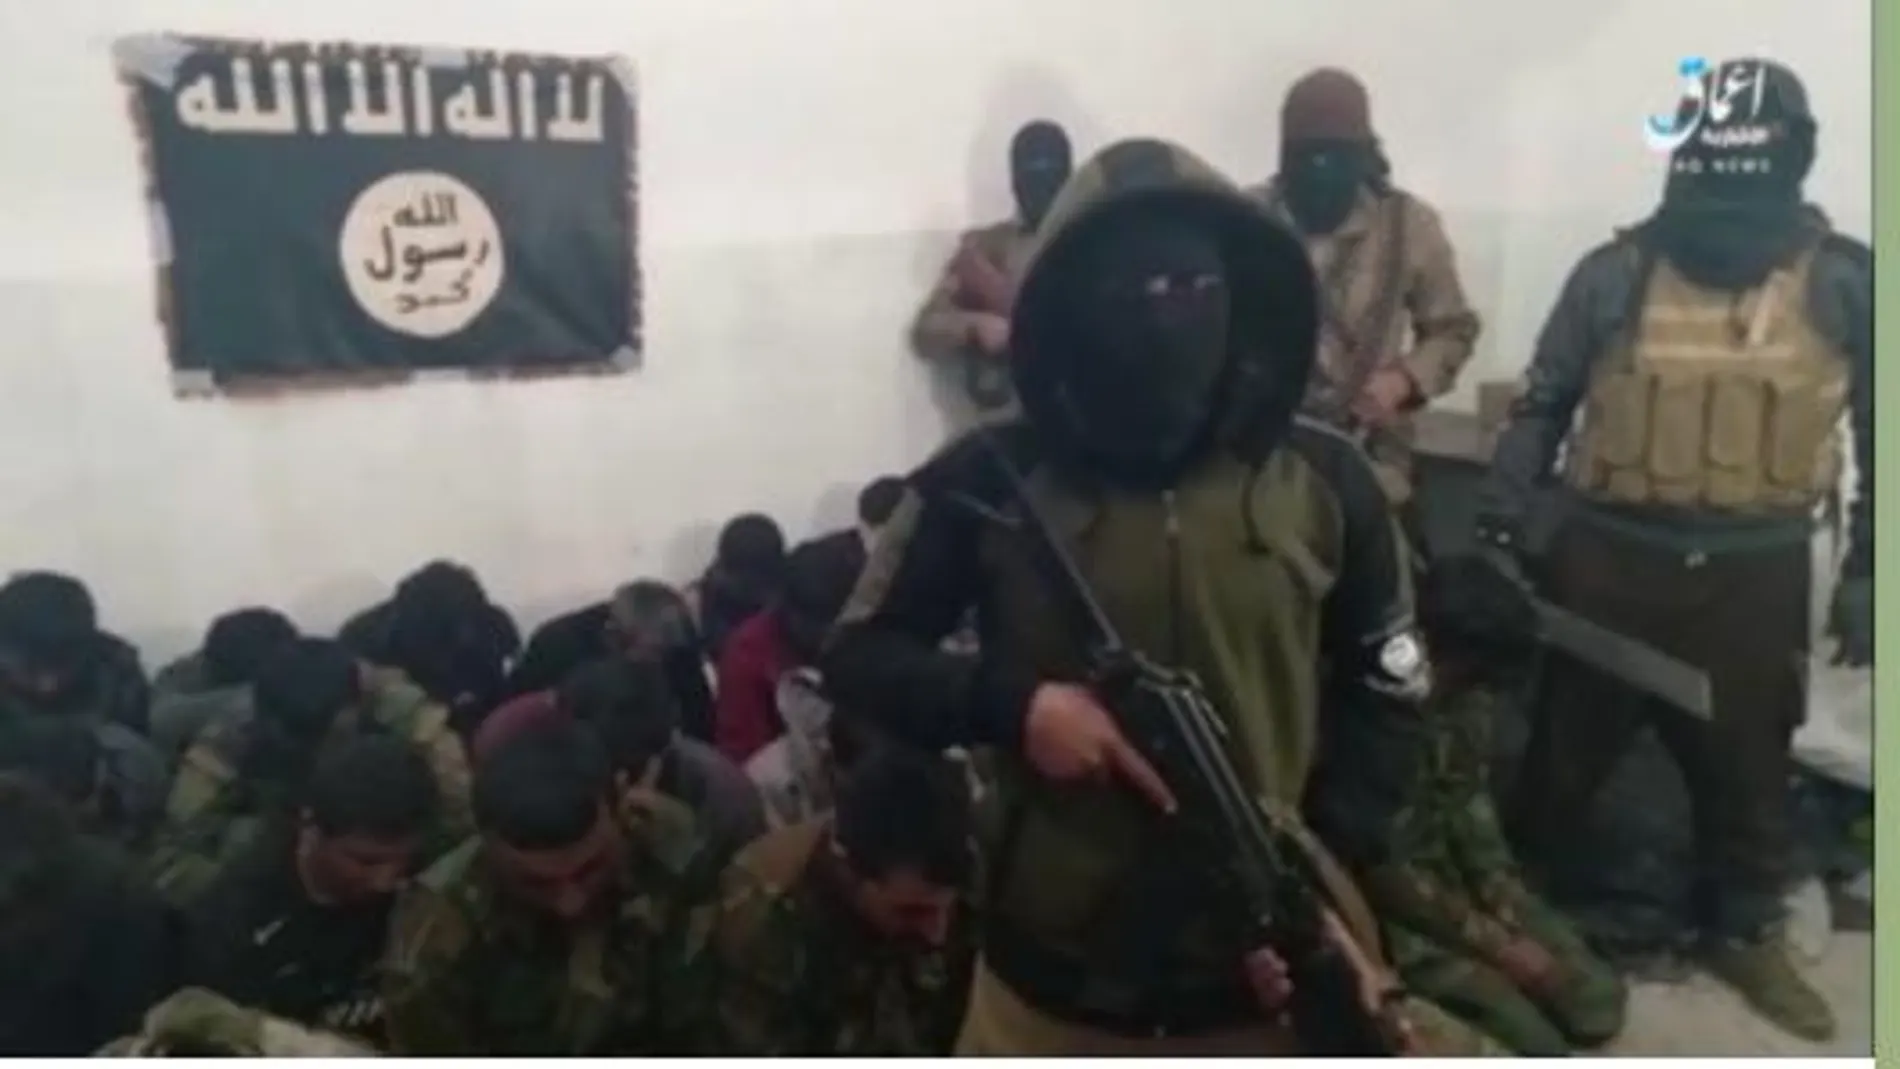 aptura de un vídeo difundido por Estado Islámico en el qwue se ve a soldados hechos prisioneros durante el ataque a la prisión